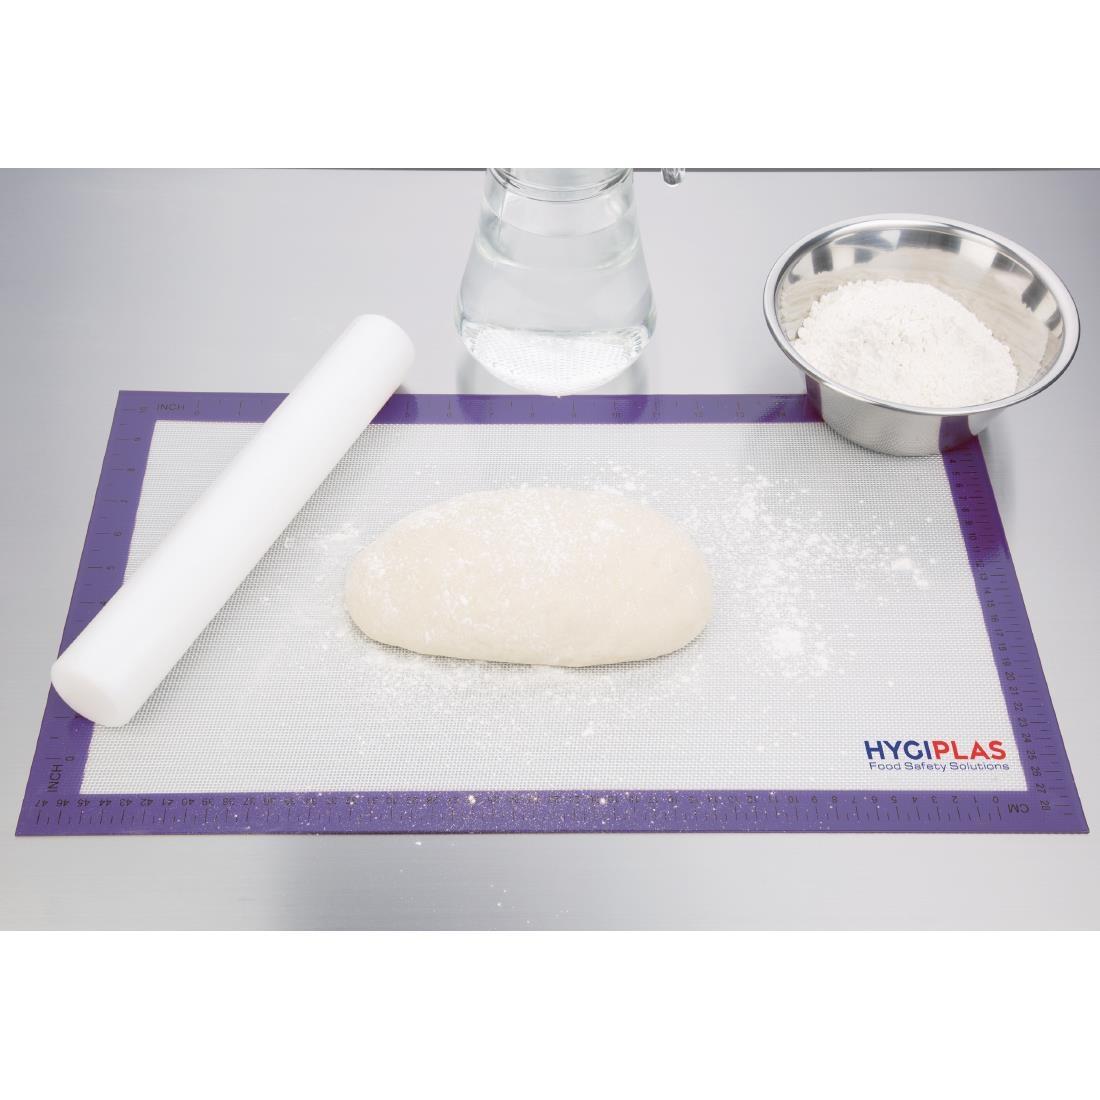 Hygiplas Allergens Non-Stick Baking Mat 520x315mm (20.5x12.4") - FB608  - 4